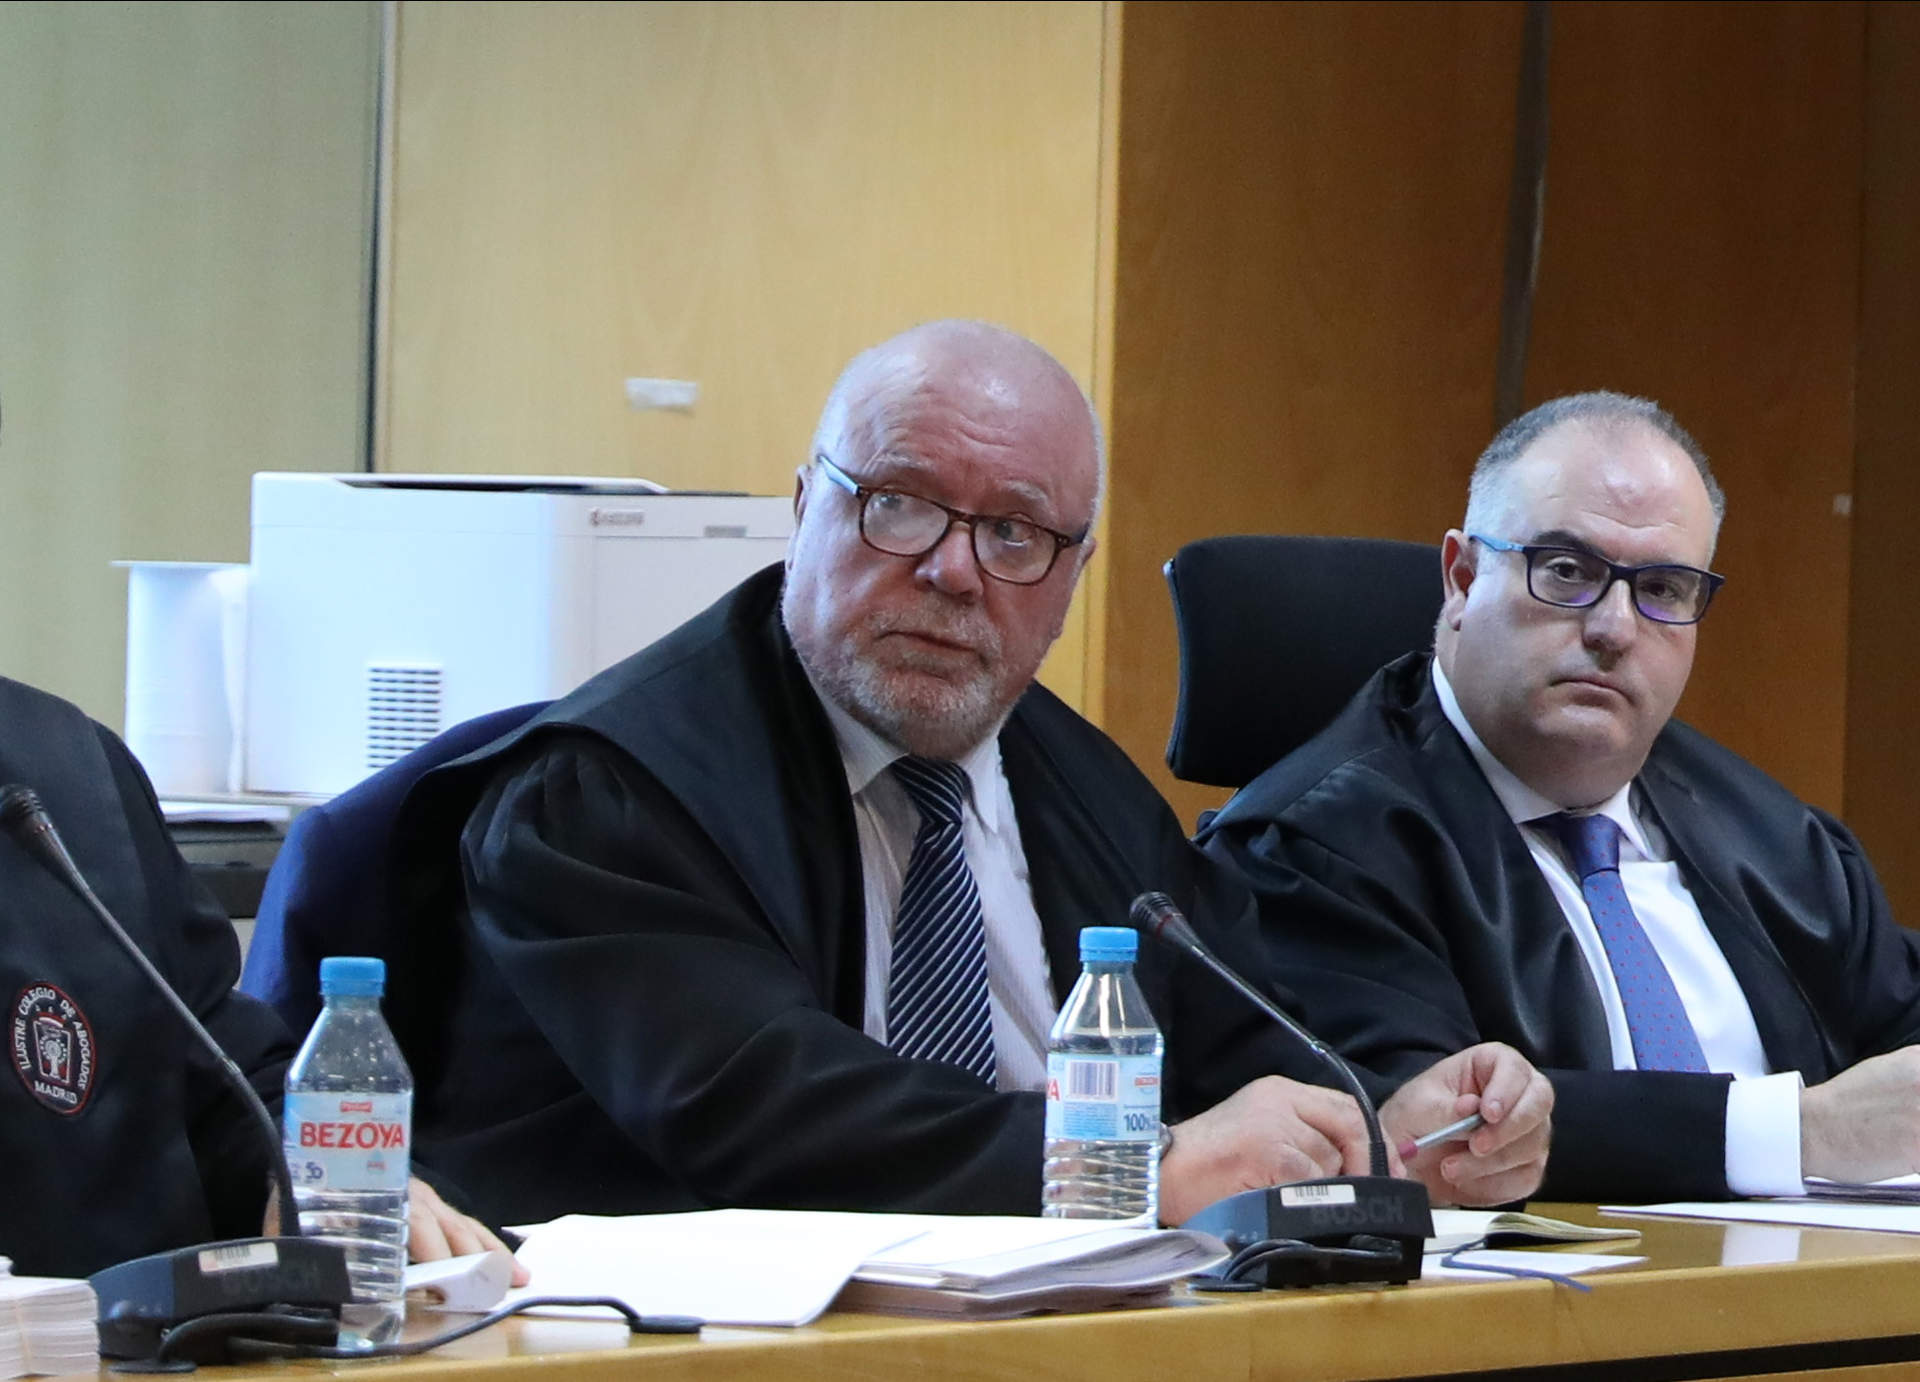 Cargar máis
El comisario jubilado José Manuel Villarejo (c) se sienta con los magistrados durante la primera sesión de un juicio en la Audiencia Provincial de Madrid, a 8 de noviembre de 2022,